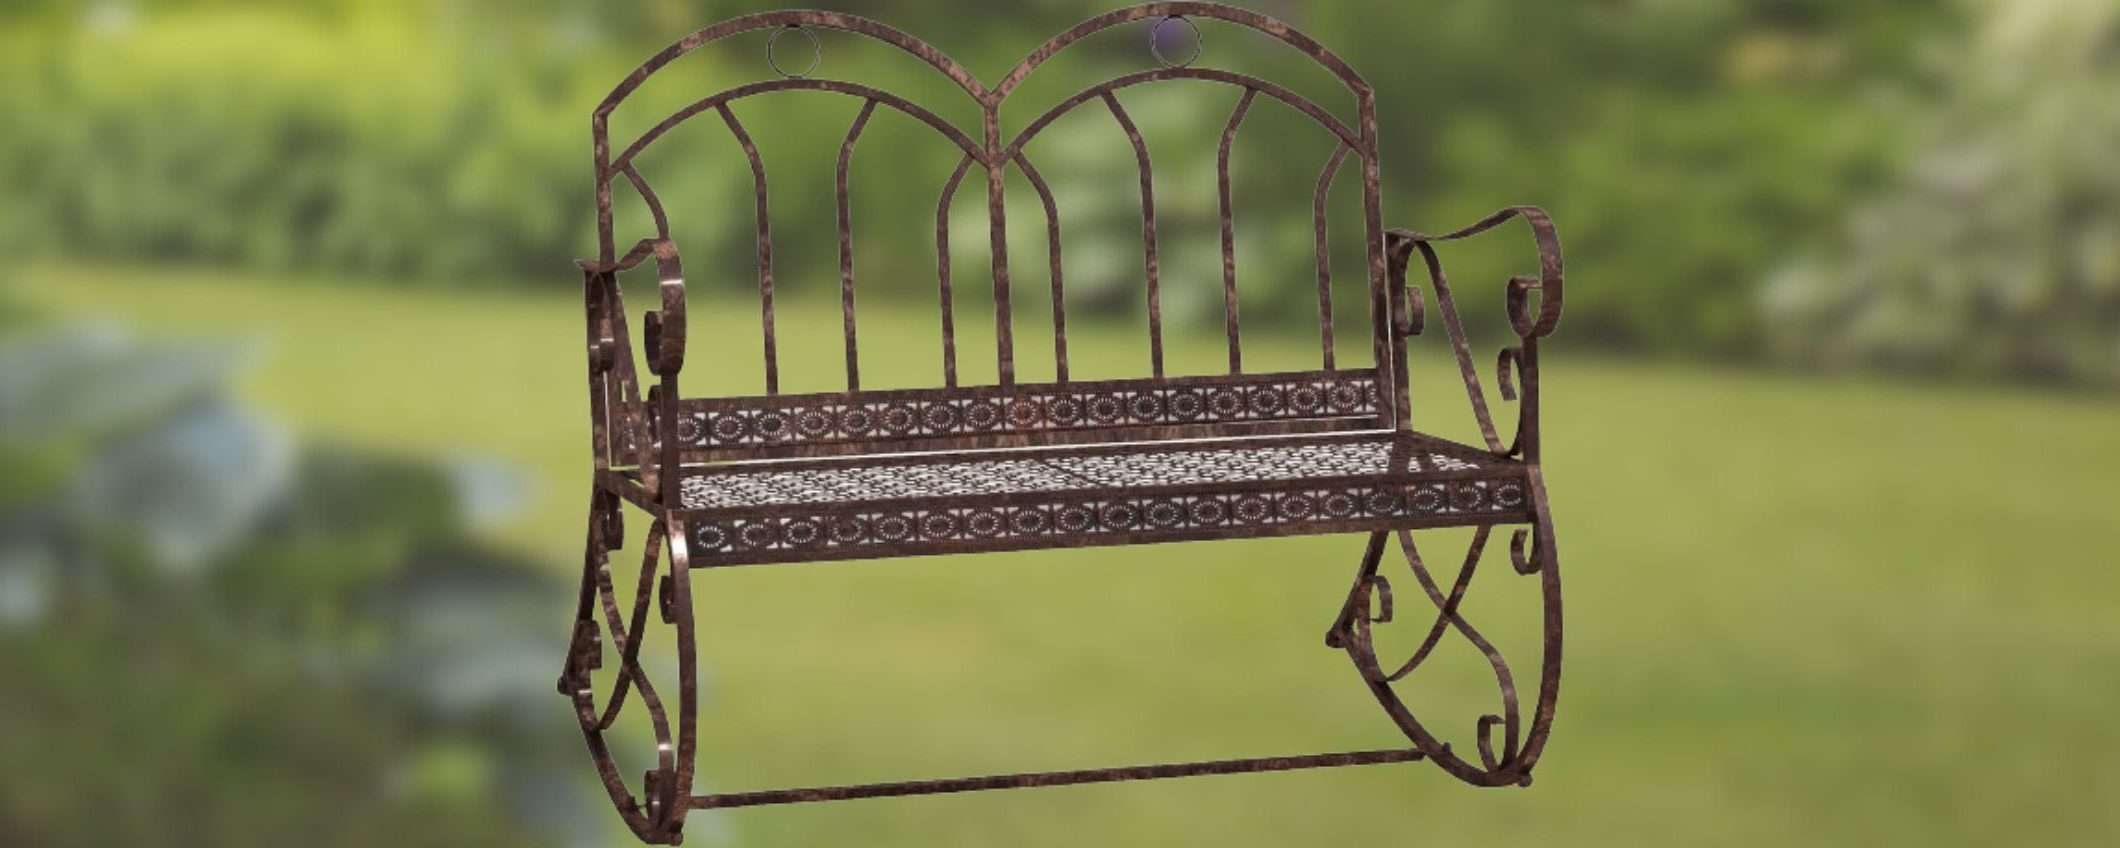 Panchina in metallo da giardino a METÀ PREZZO su Amazon: è SPLENDIDA (52€)